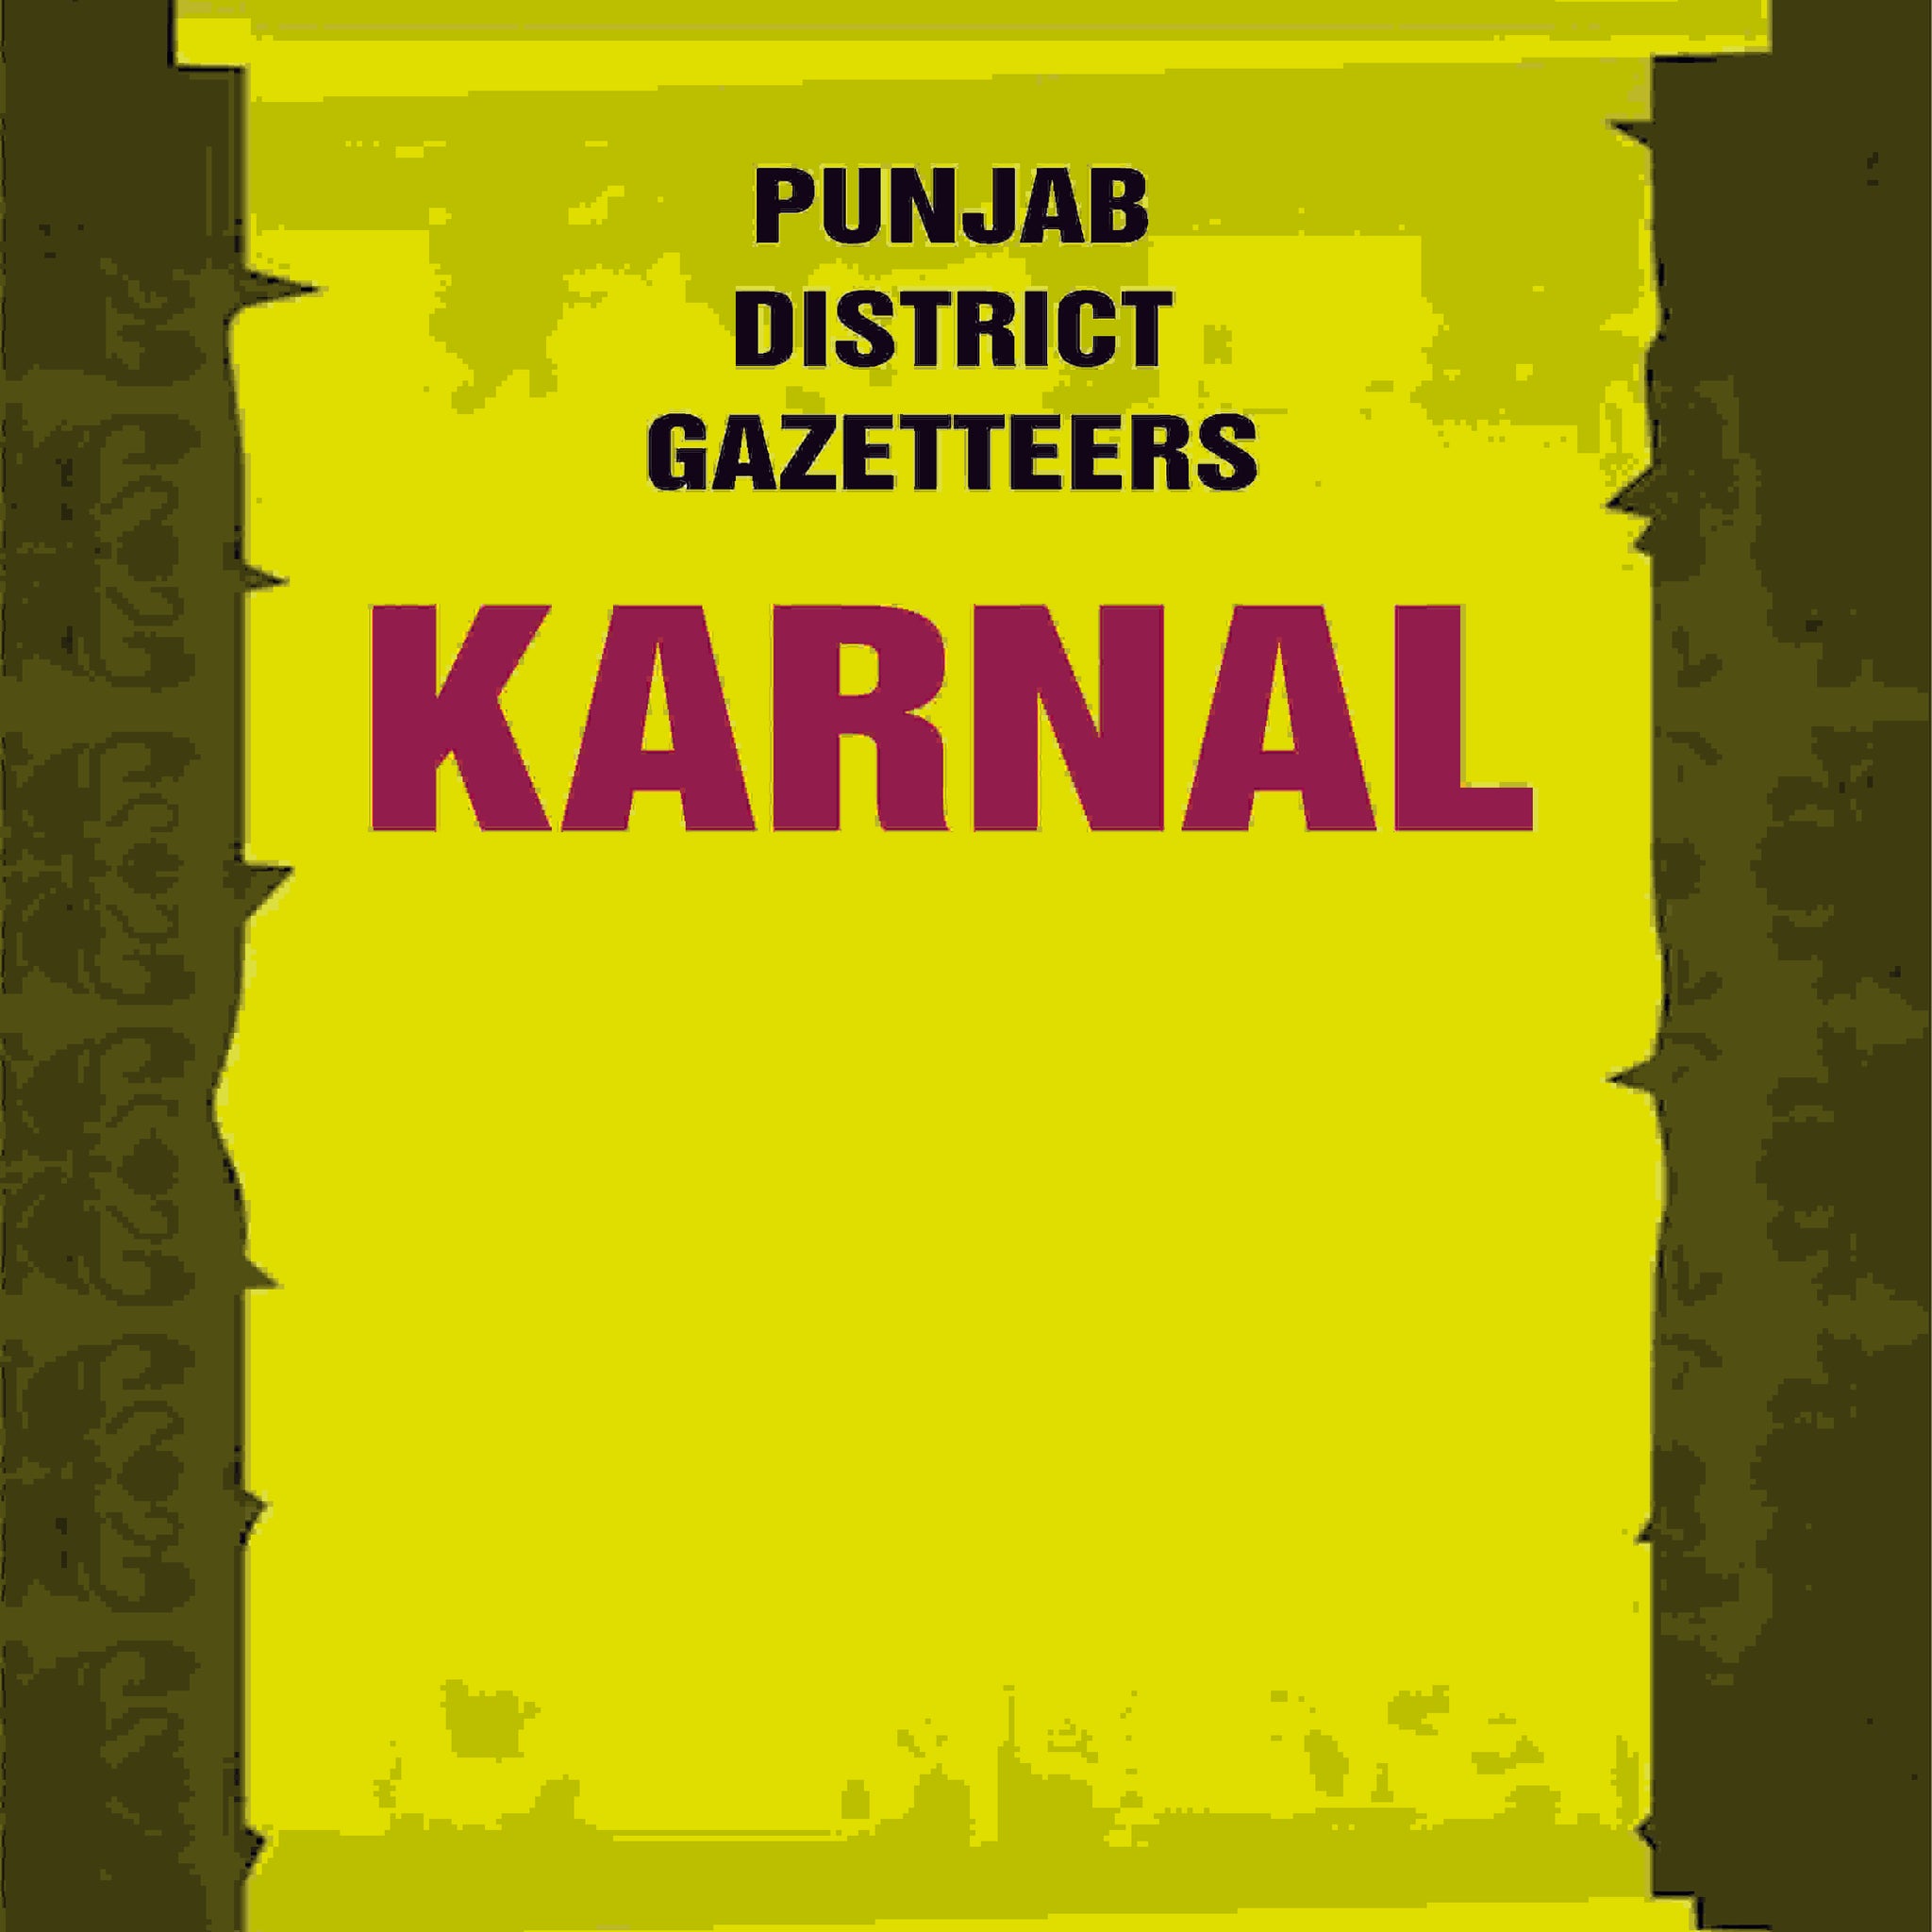 Punjab District Gazetteers: Karnal